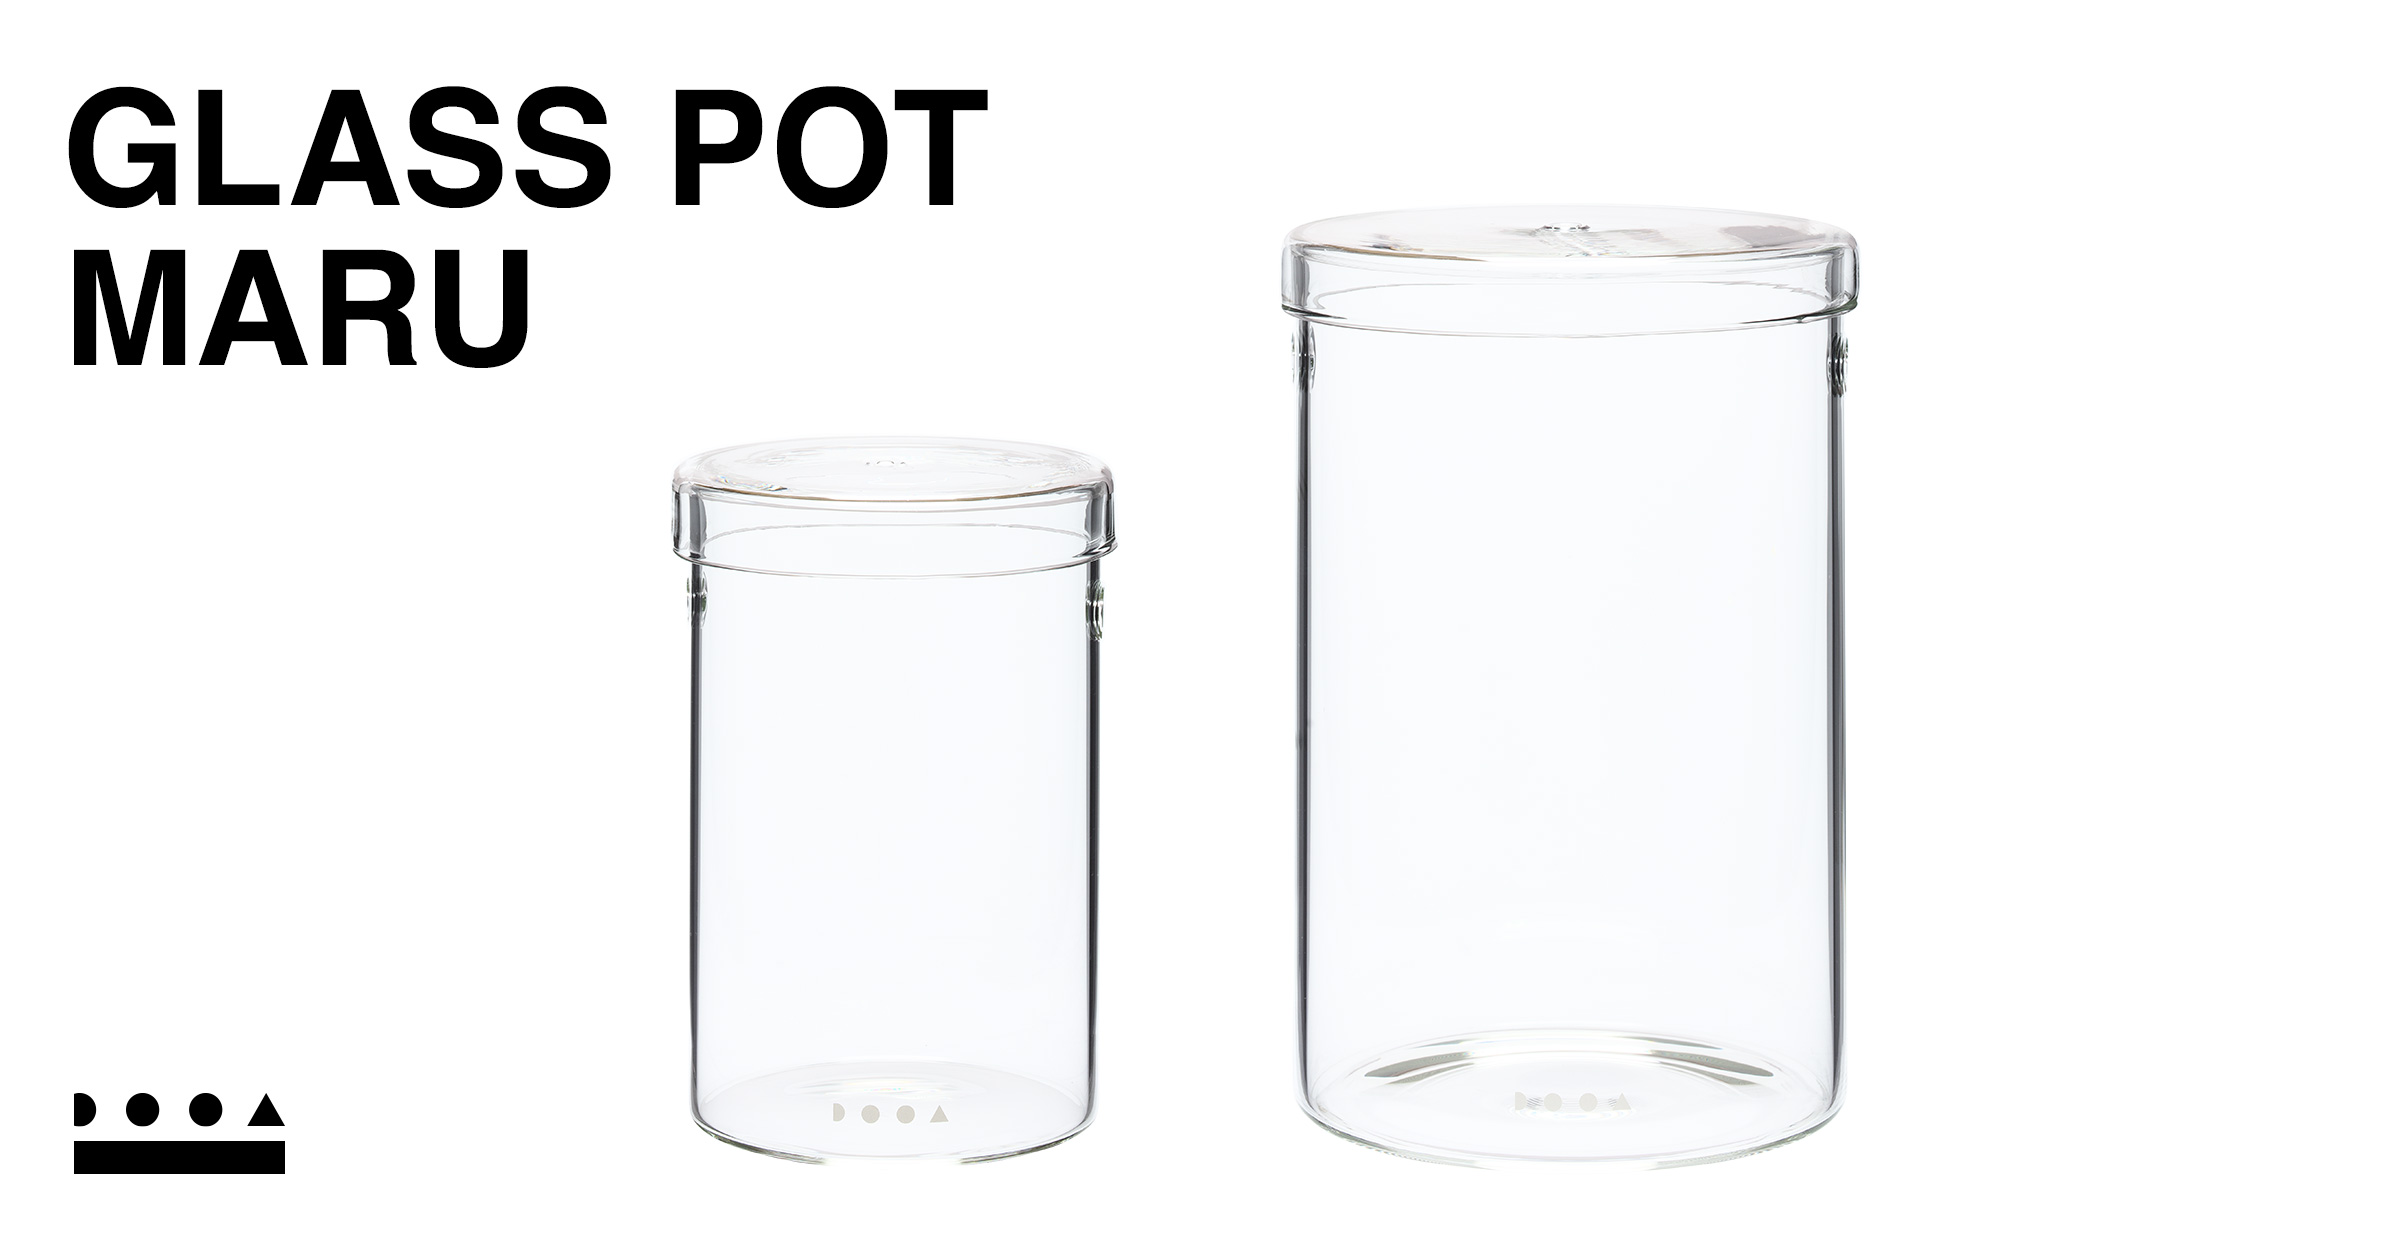 GLASS POT MARU 95 | PRODUCTS | DOOA